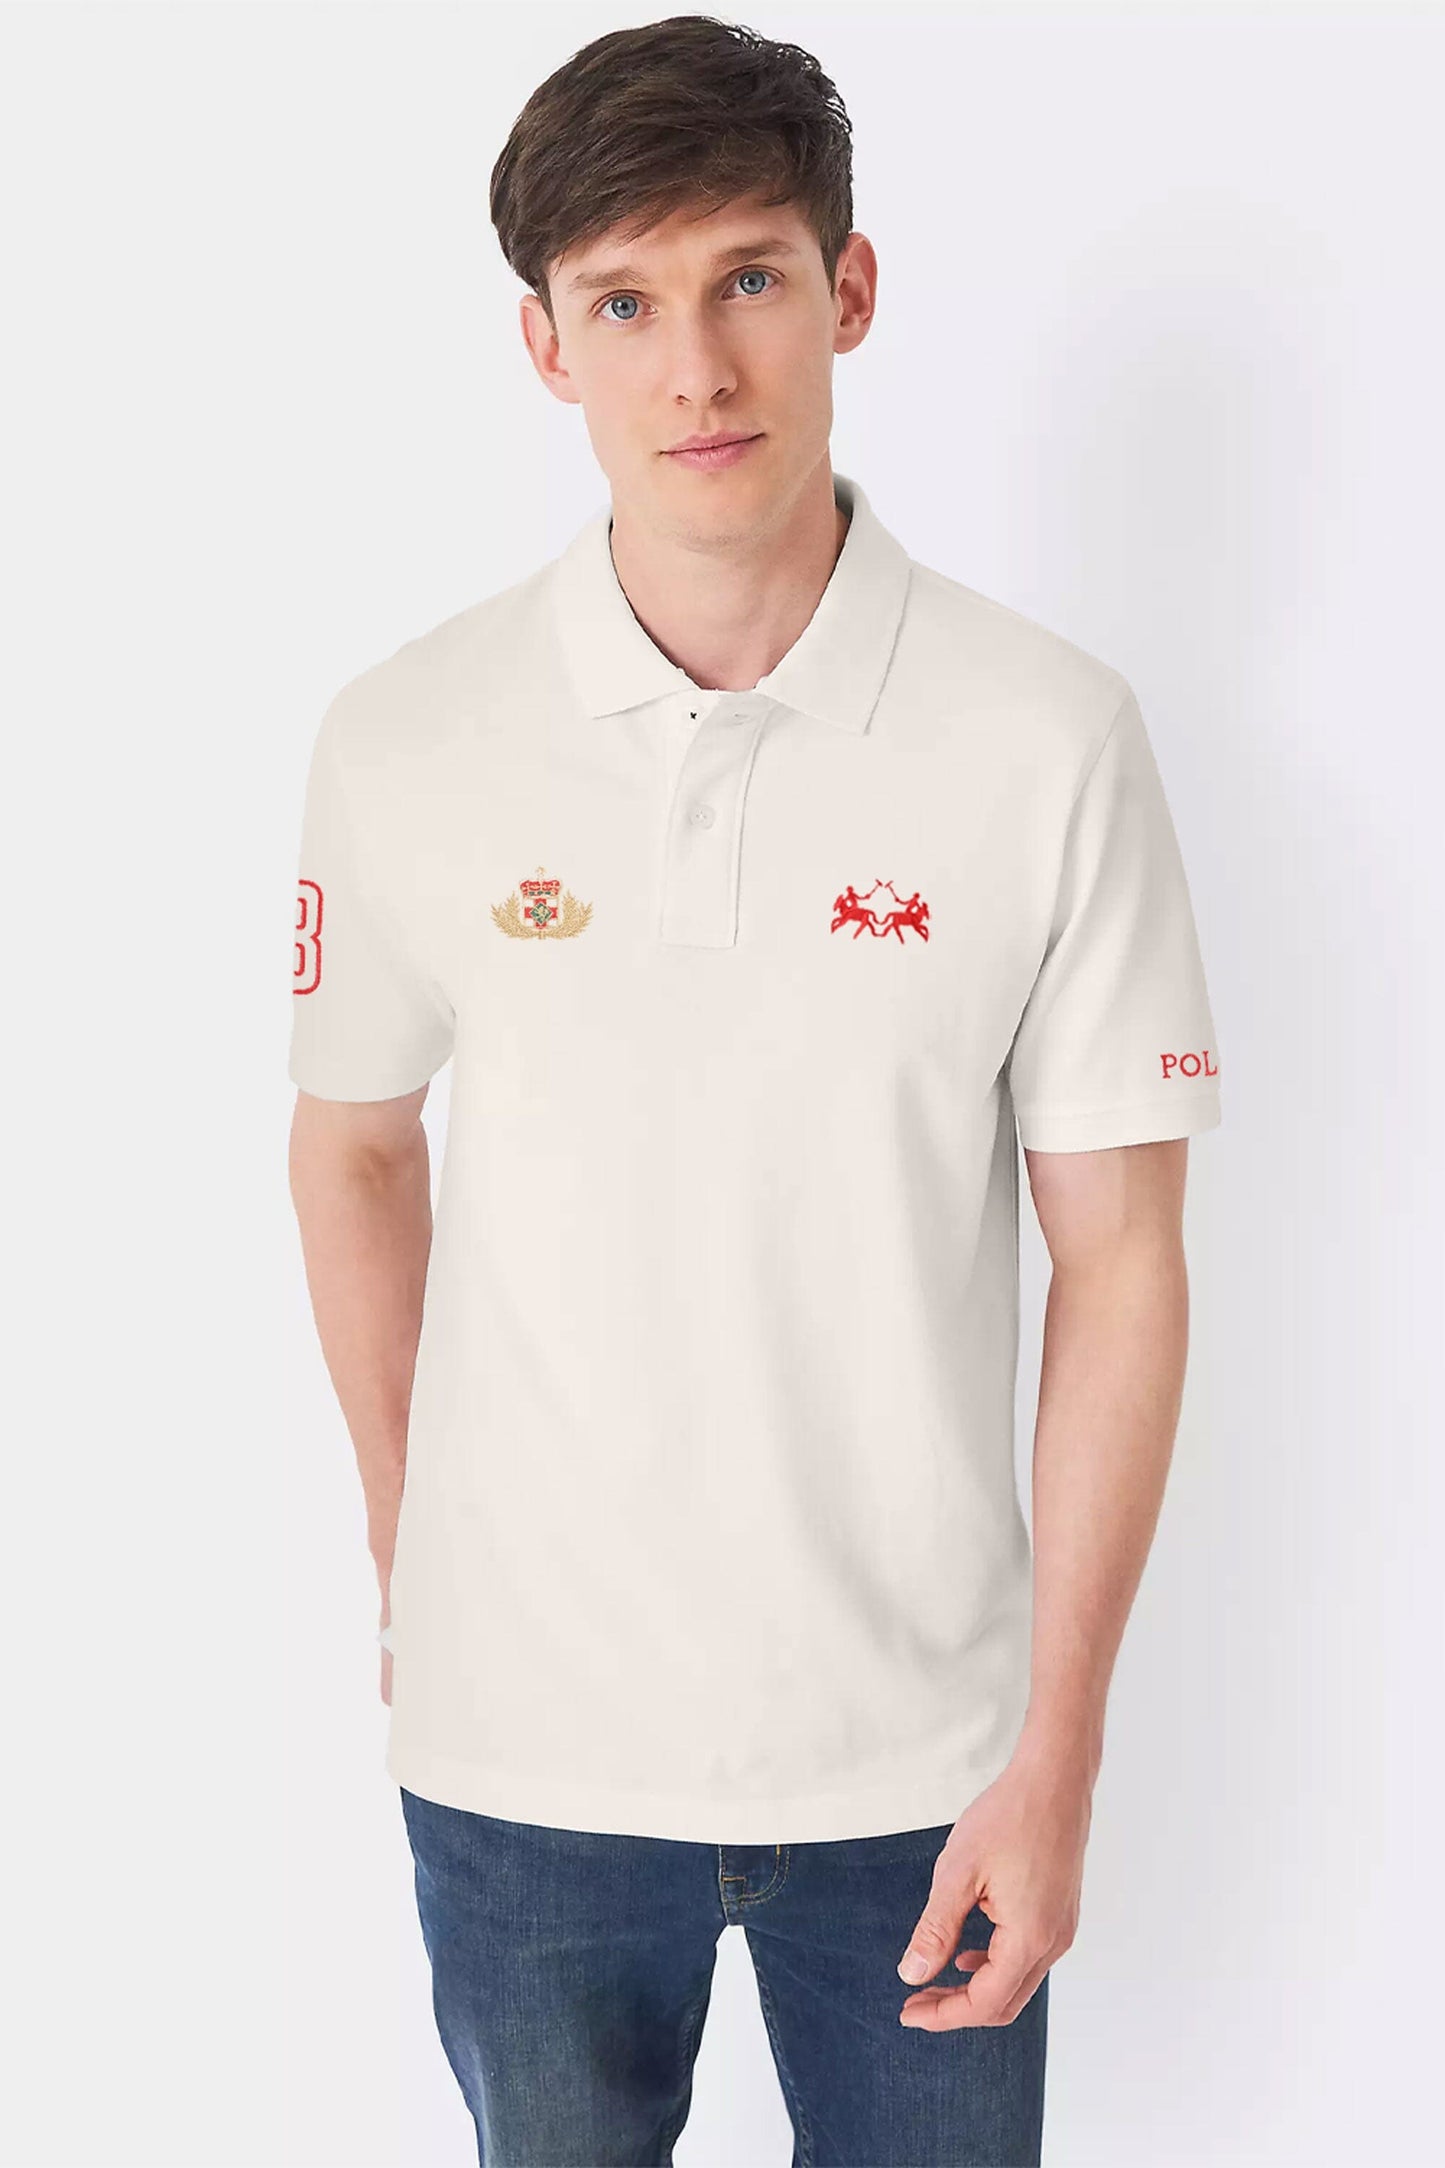 Polo Republica Men's Twin Pony Crest & 8 Embroidered Polo Shirt Men's Polo Shirt Polo Republica Off White S 